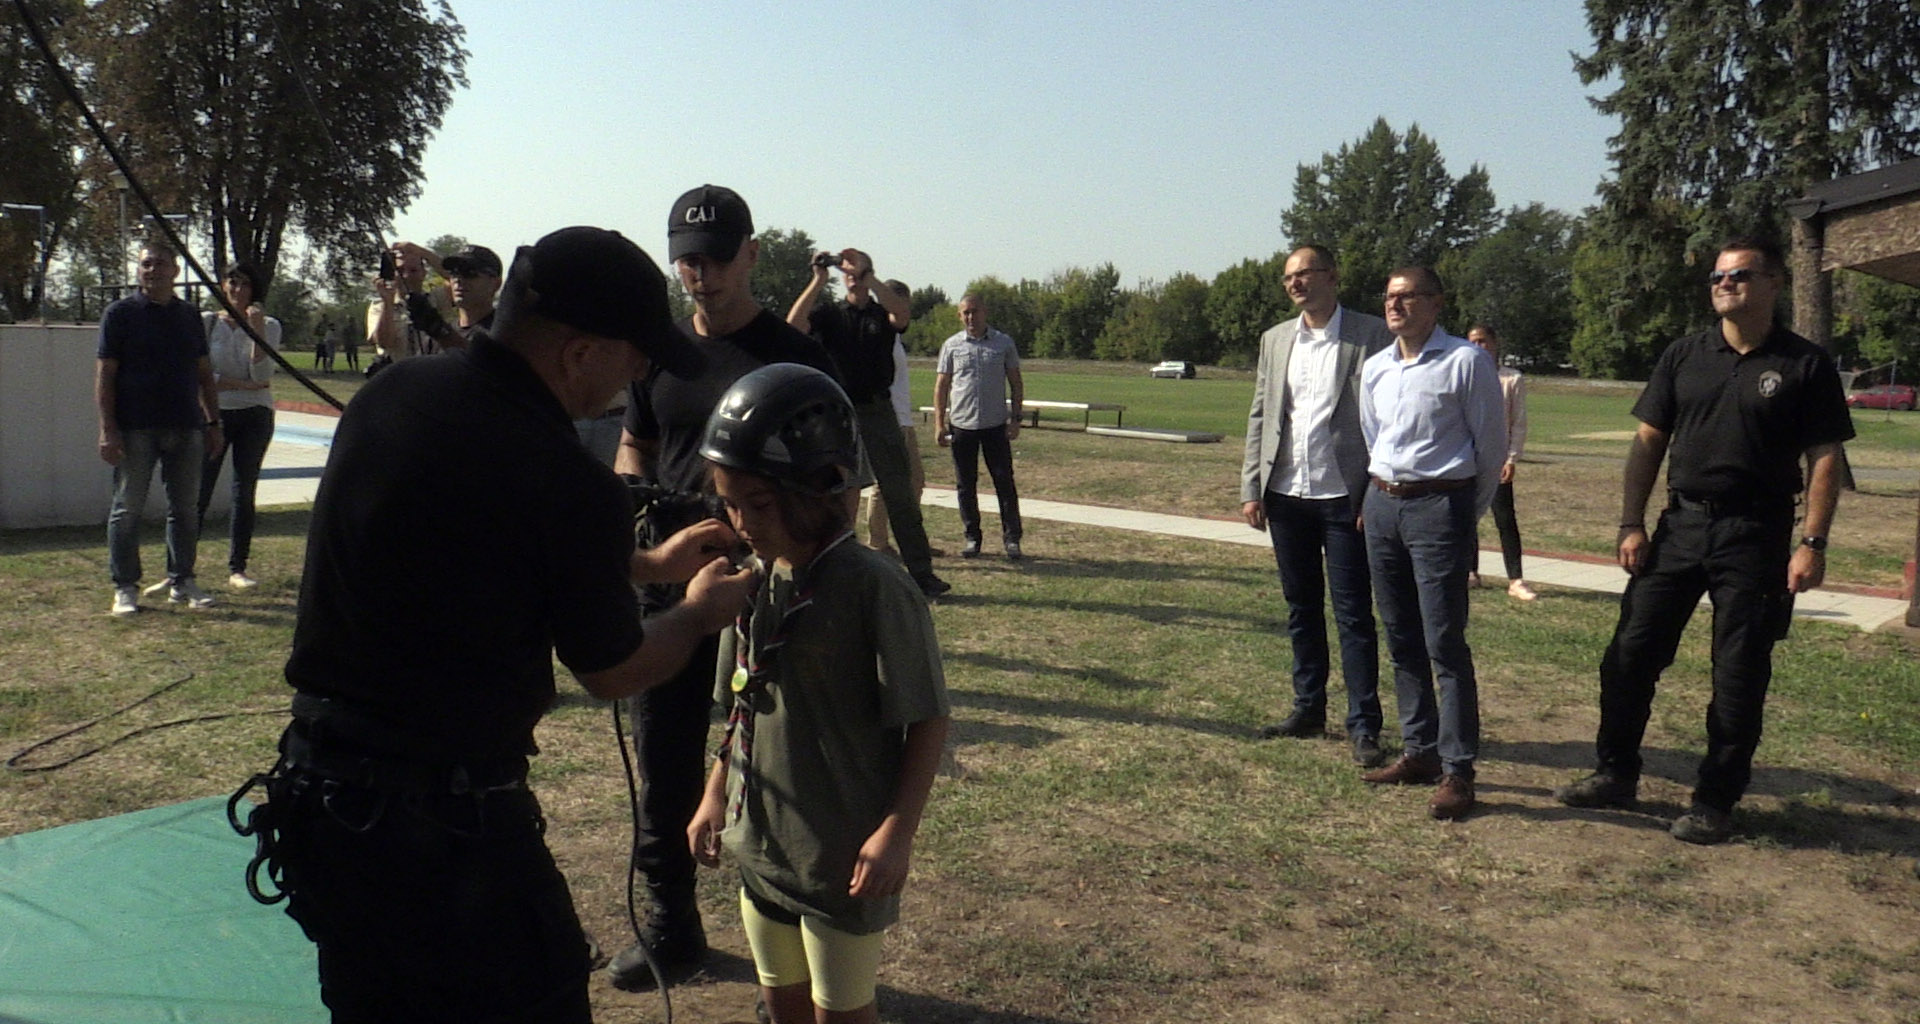  Такмичење младих извиђача Београда одржано у бази САЈ-а